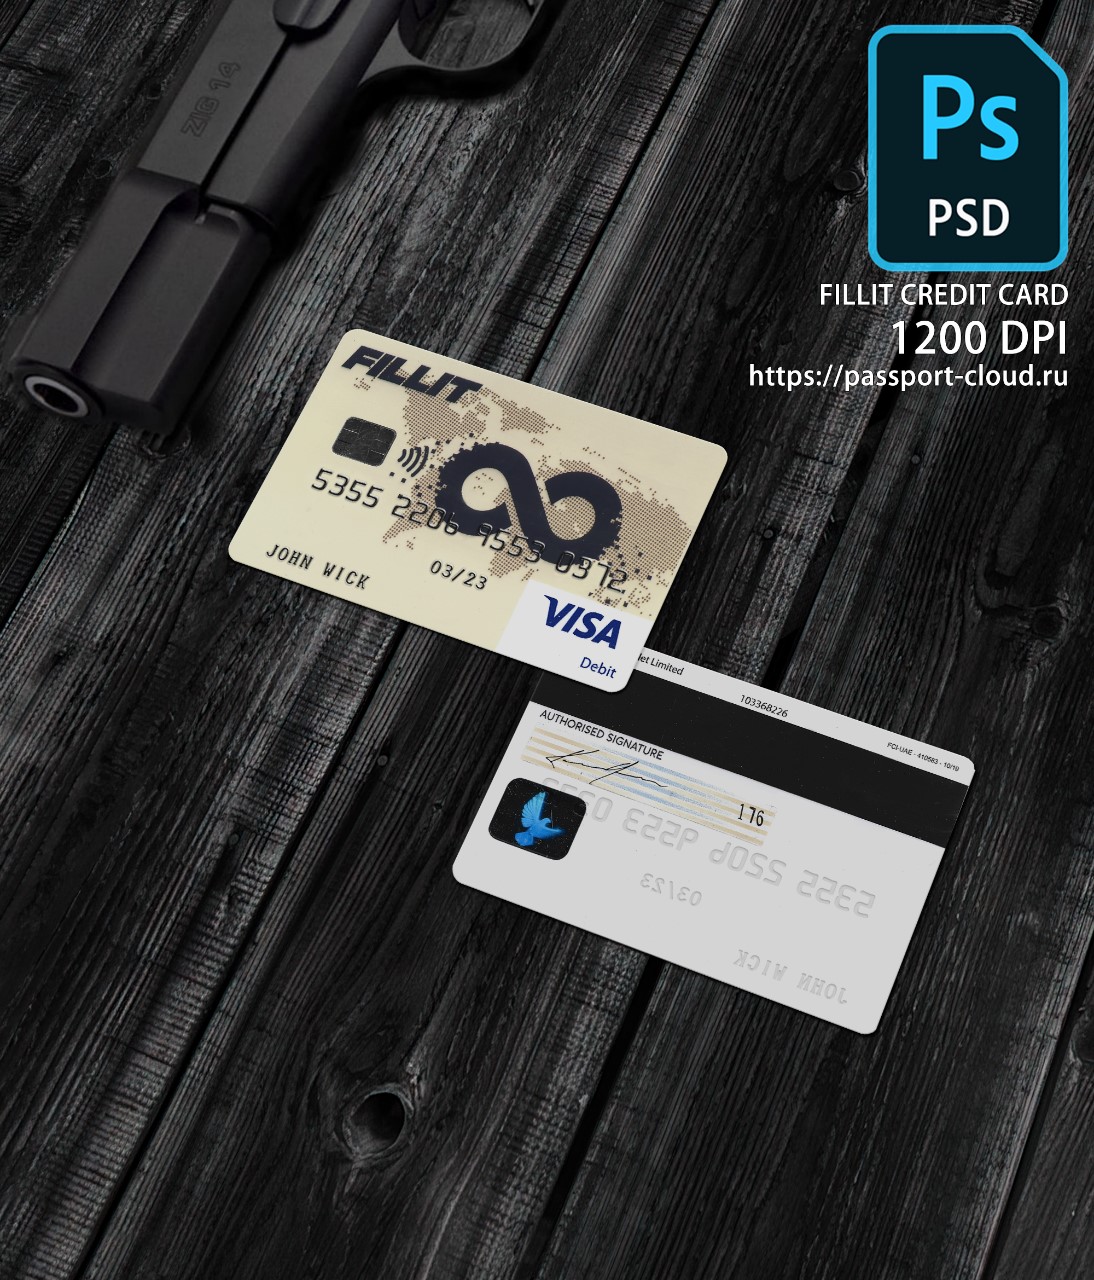 FILLIT Credit Card PSD1